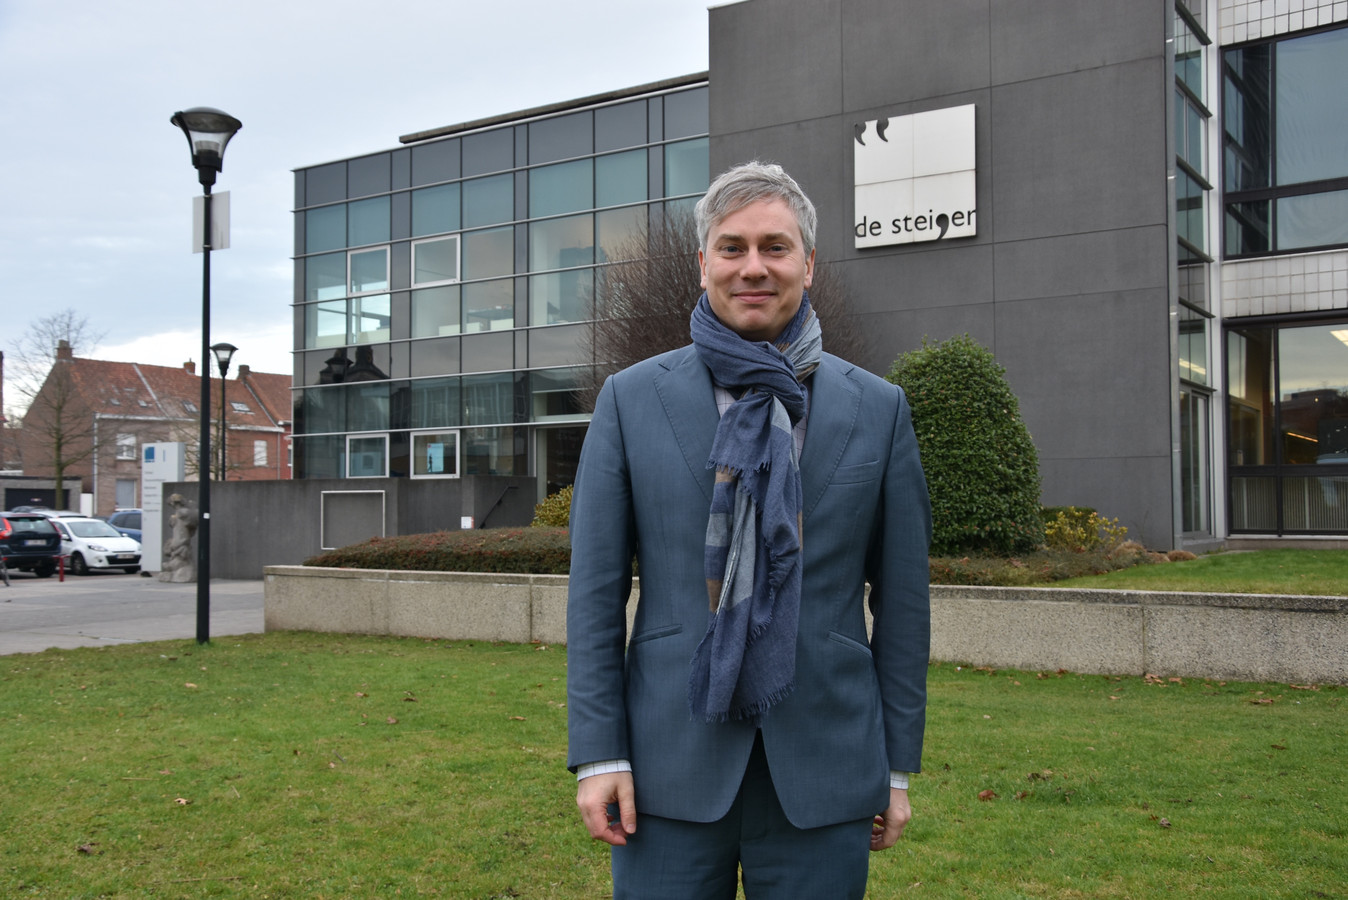 Gemeenteraadsvoorzitter Tom Vlaeminck is nu ook voorzitter van de Open Vld regio Zuid-West-Vlaanderen.